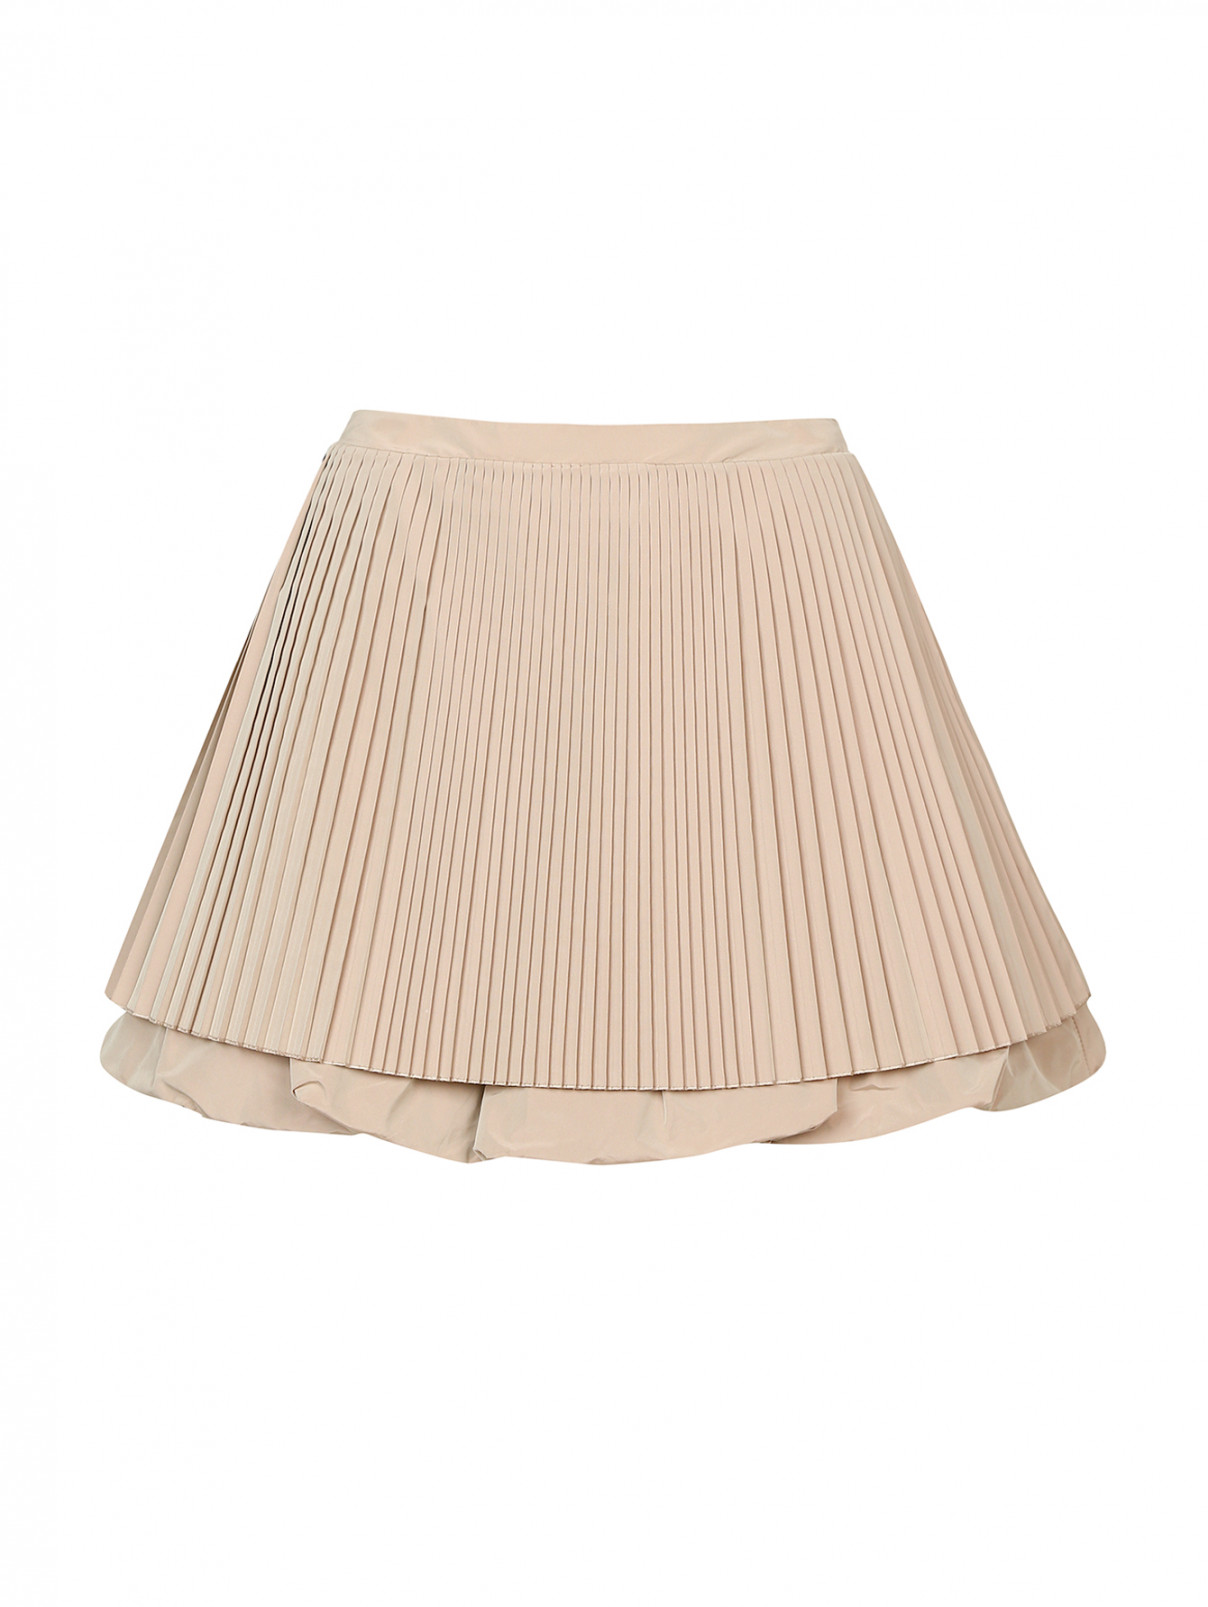 Двойная юбка-мини с плиссировкой JO NO FUI  –  Общий вид  – Цвет:  Бежевый